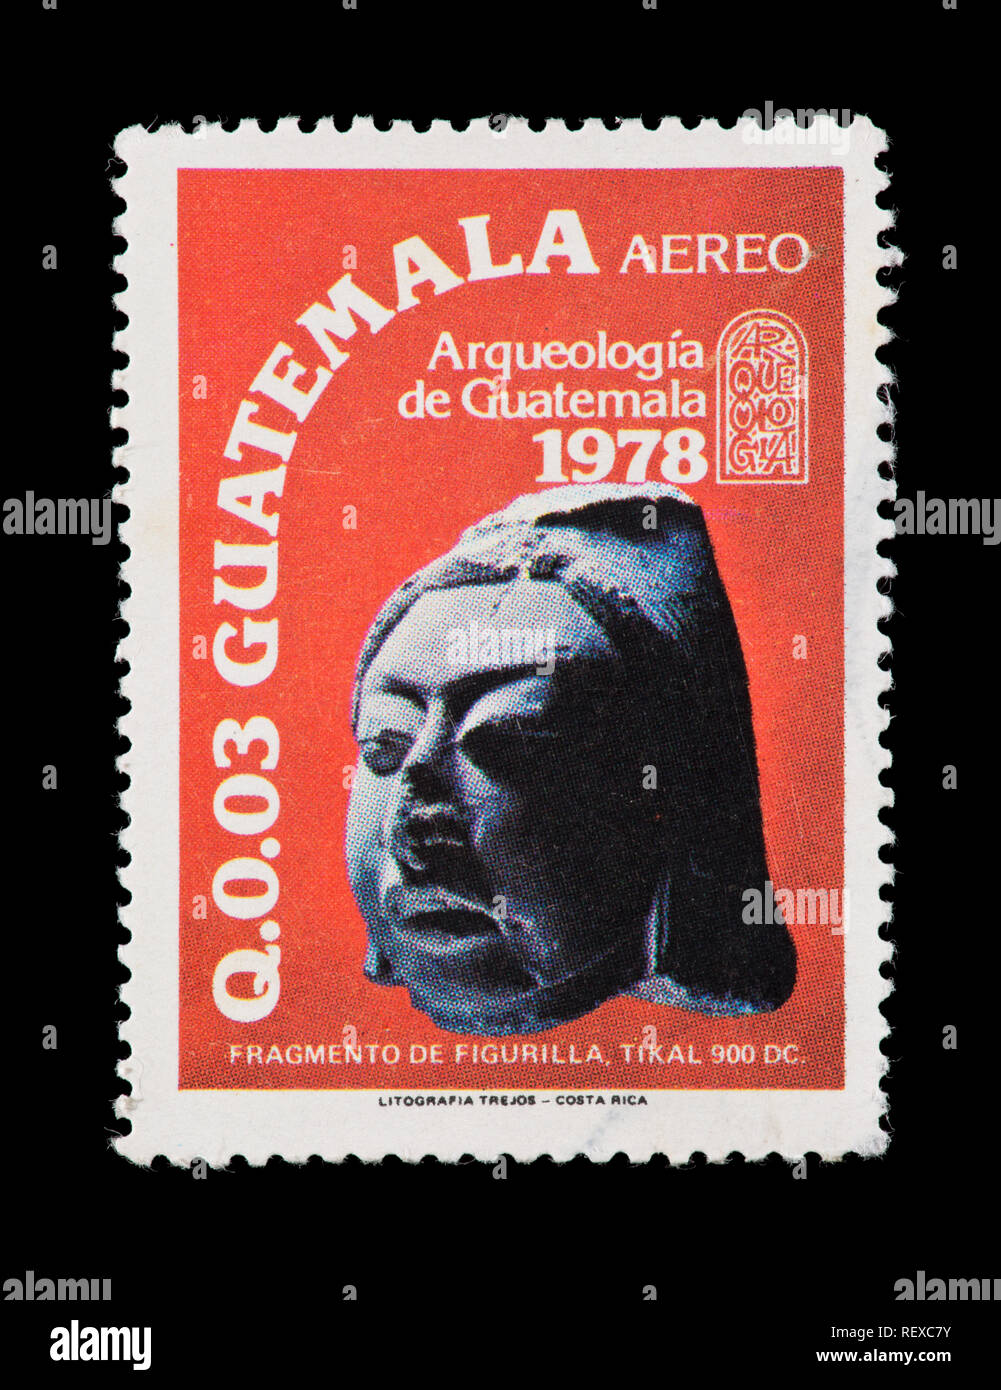 Estampilla de correo aéreo desde Guatemala representando una cabeza de mujer de cerámica de unos 900 A.D, de Tikal. Foto de stock